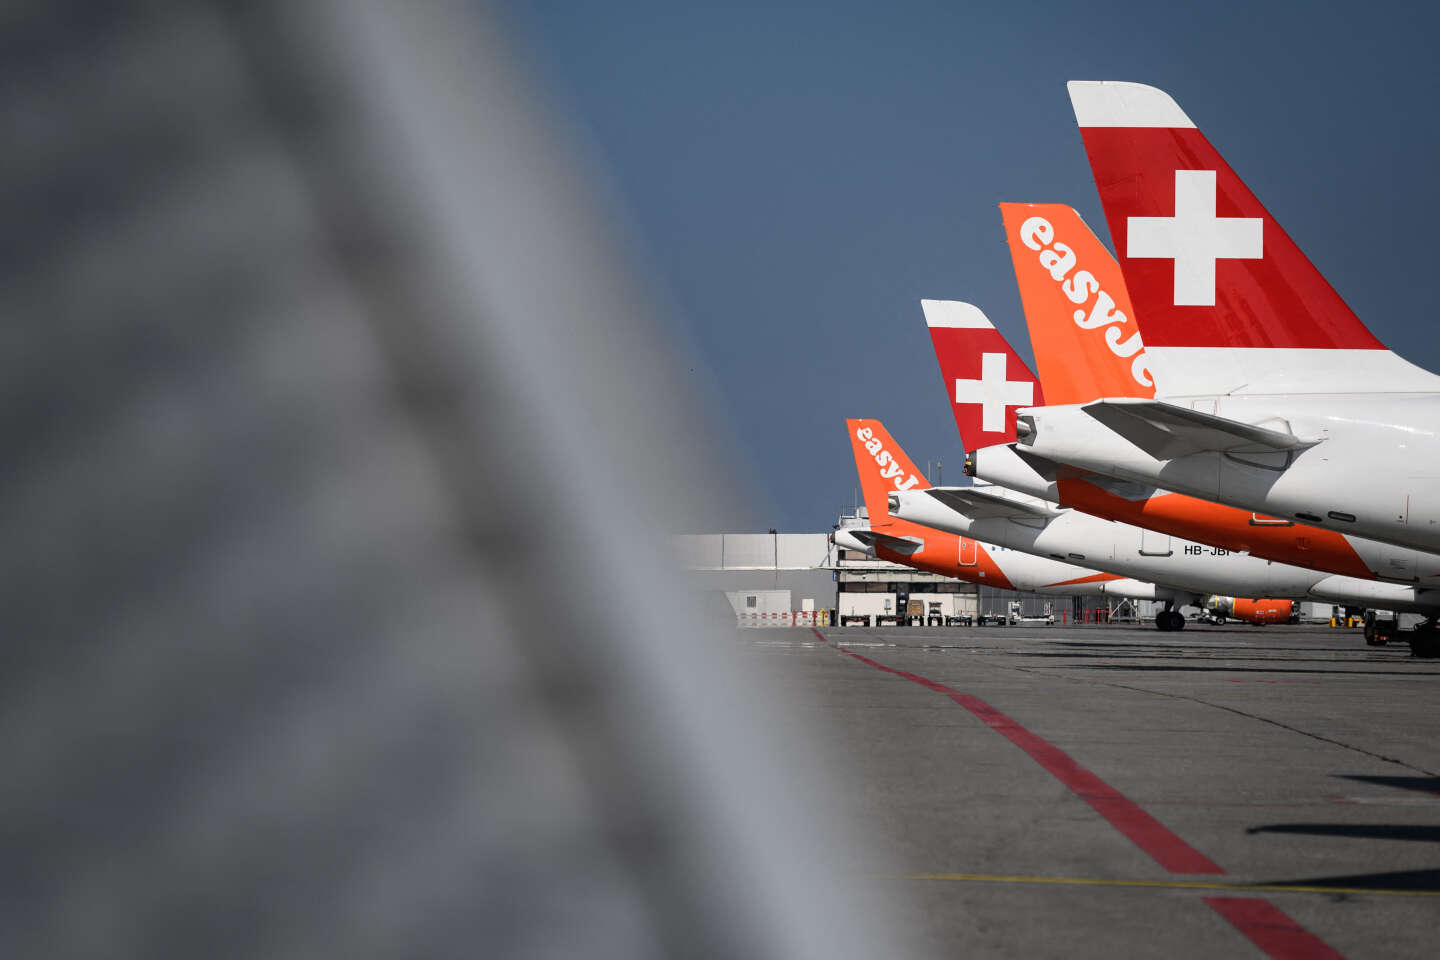 In Zwitserland is het luchtruim “tot nader order gesloten” vanwege een computerstoring